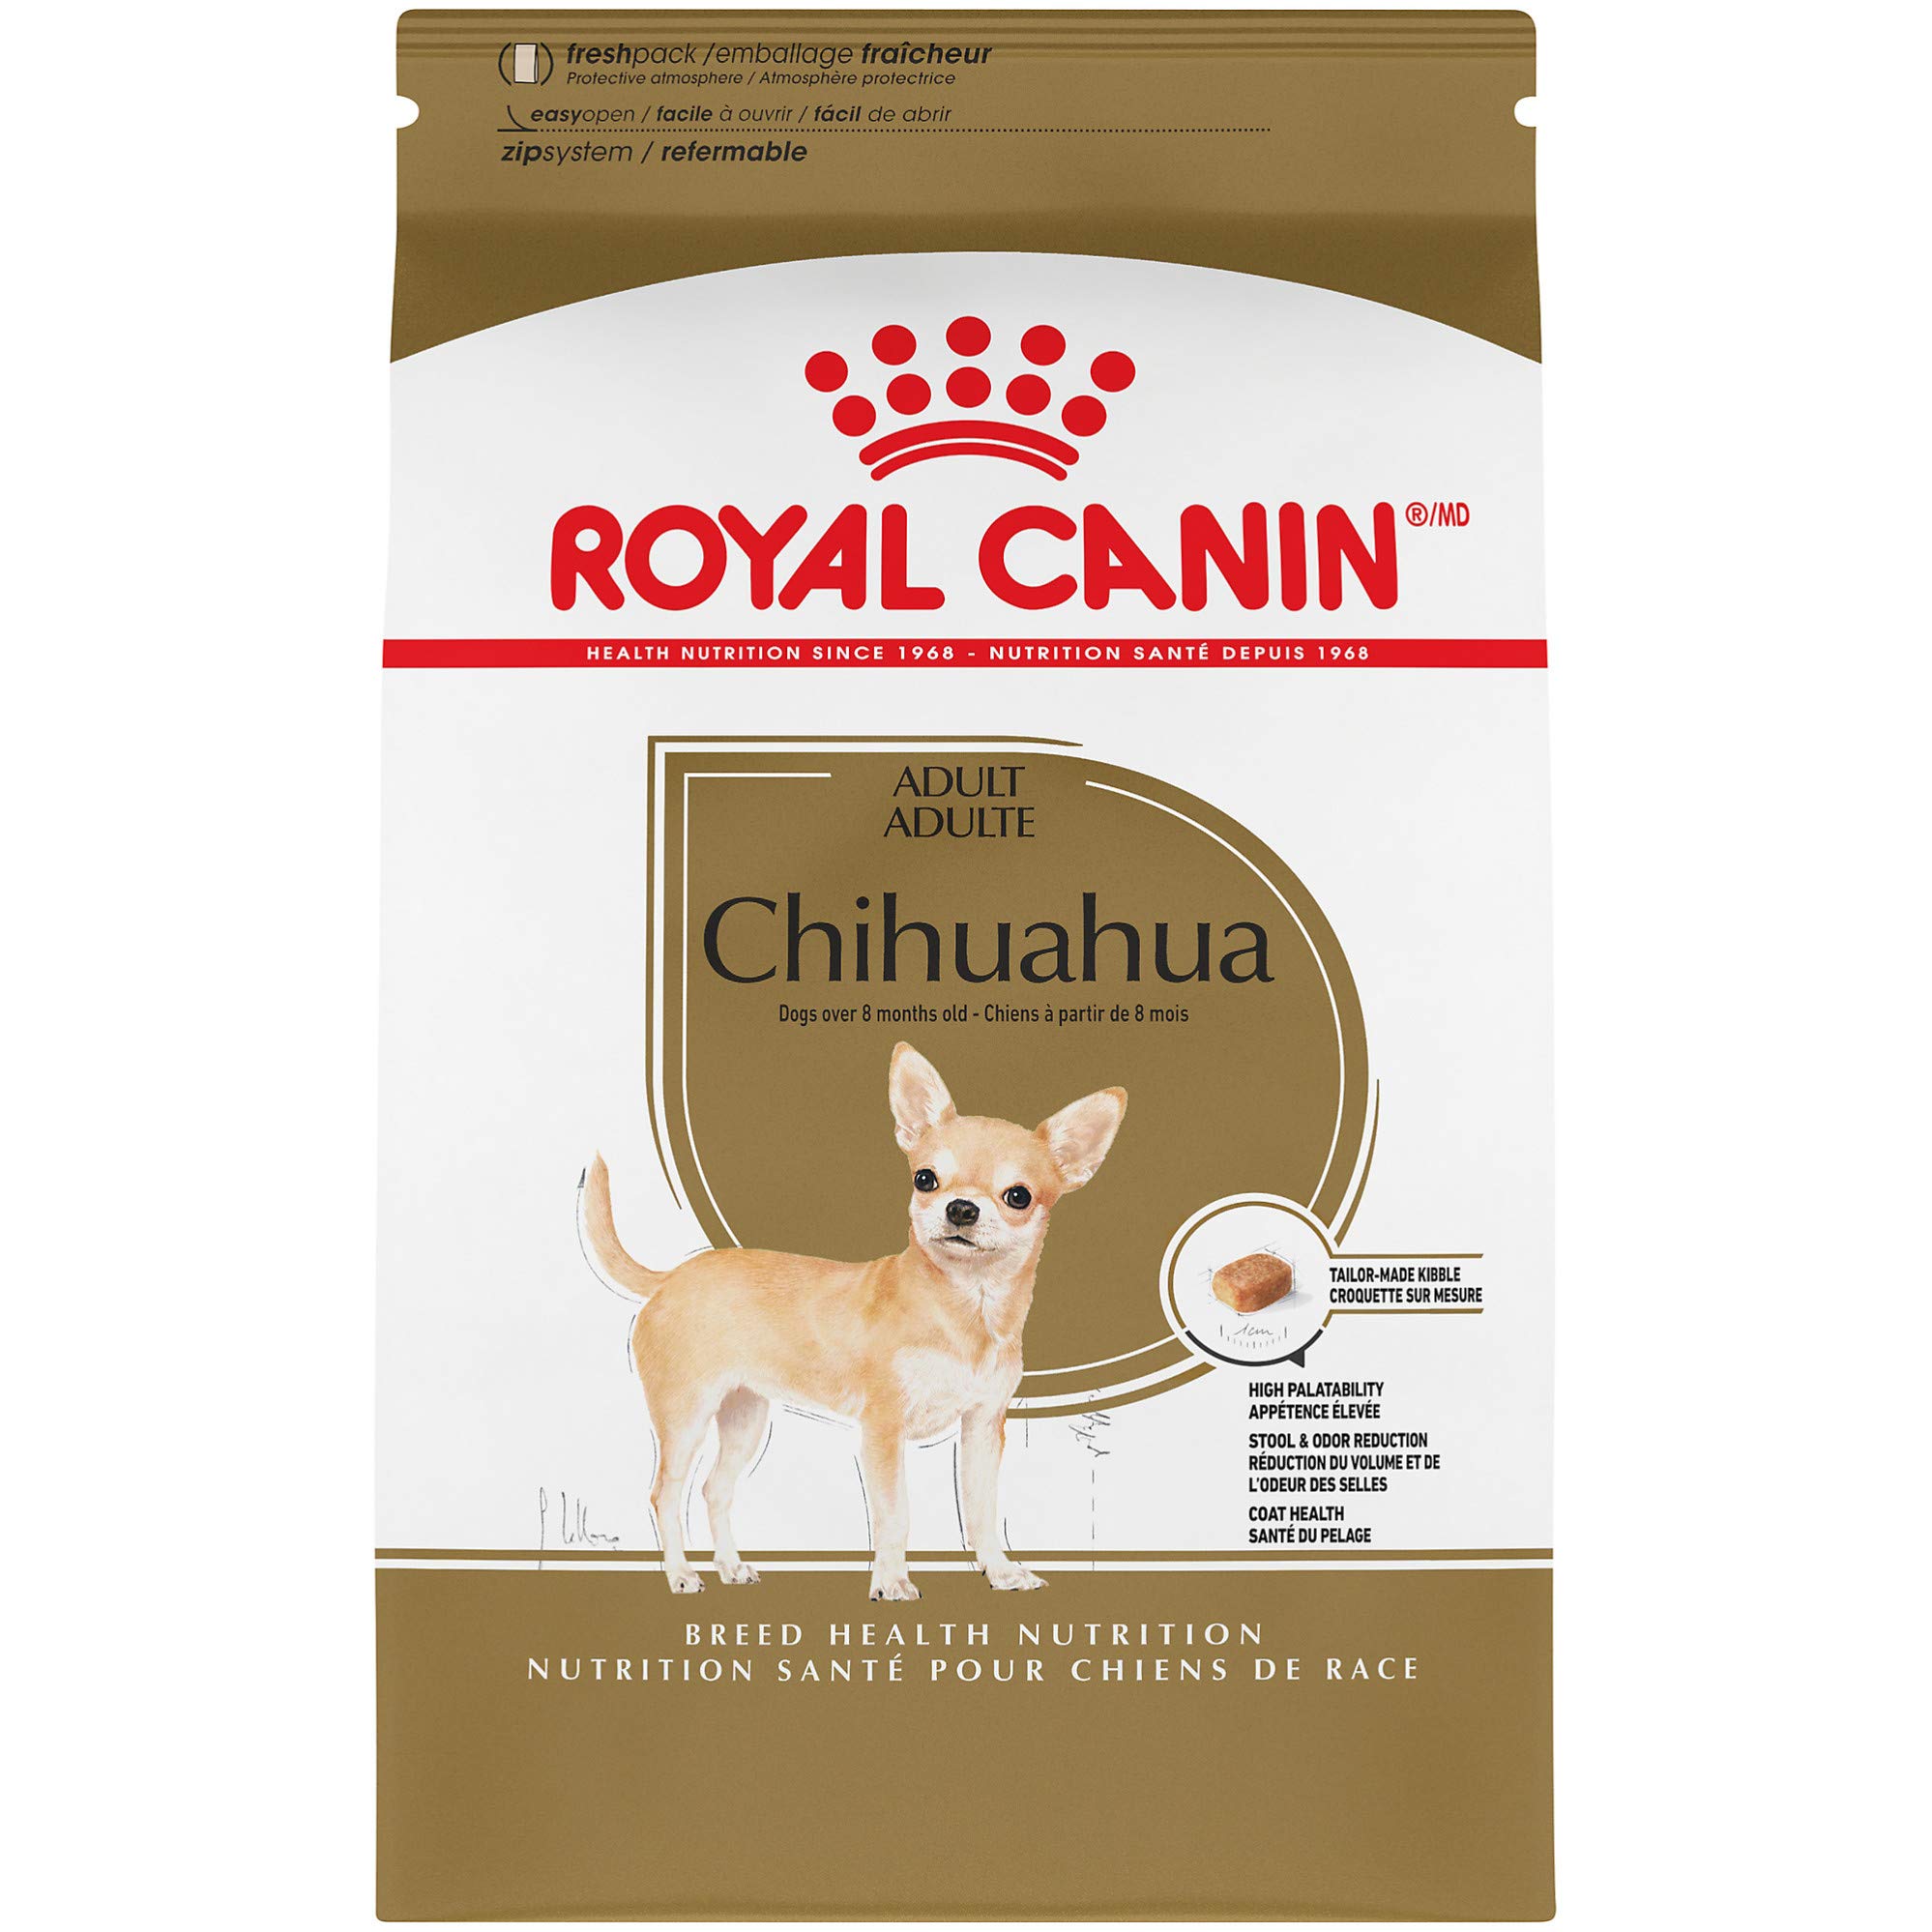 Royal Canin नस्ल स्वास्थ्य पोषण चिहुआहुआ वयस्क सूखा कुत...